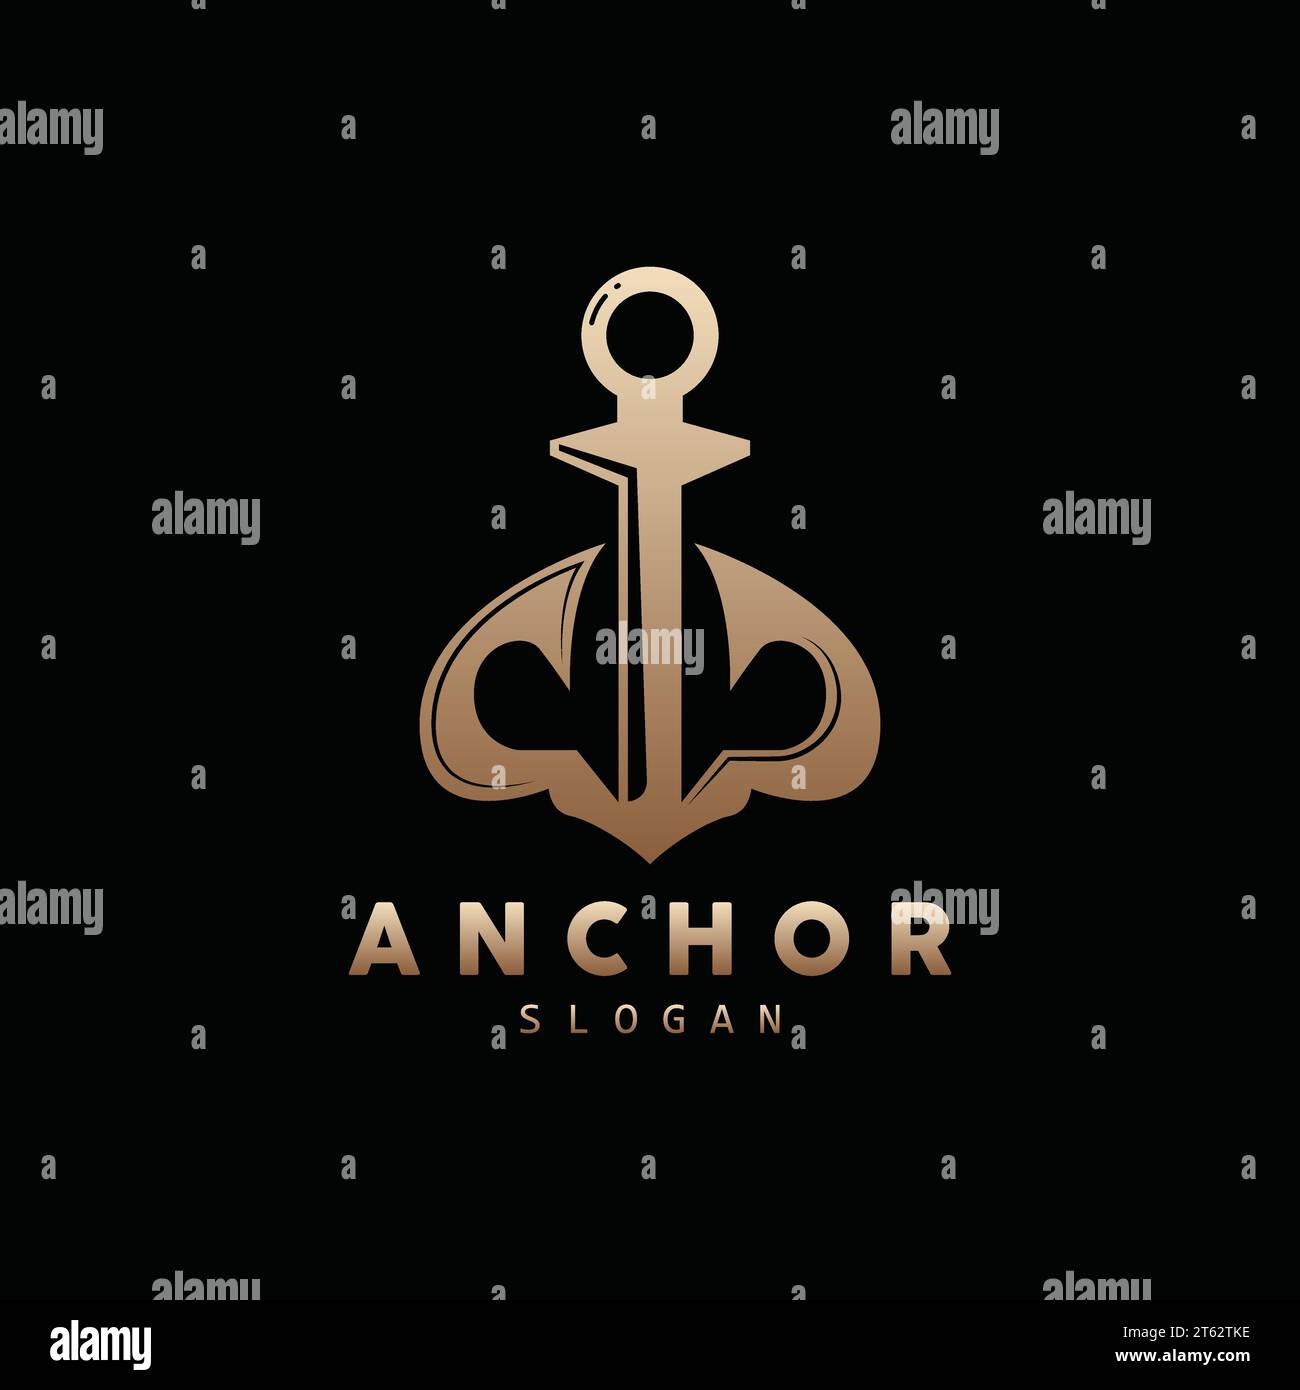 Anchor Logo, Ocean Ship Vector, Simple Minimalist Design, Anchor Icon, Spartan, Ocean, Symbol Template Illustration Stock Vector